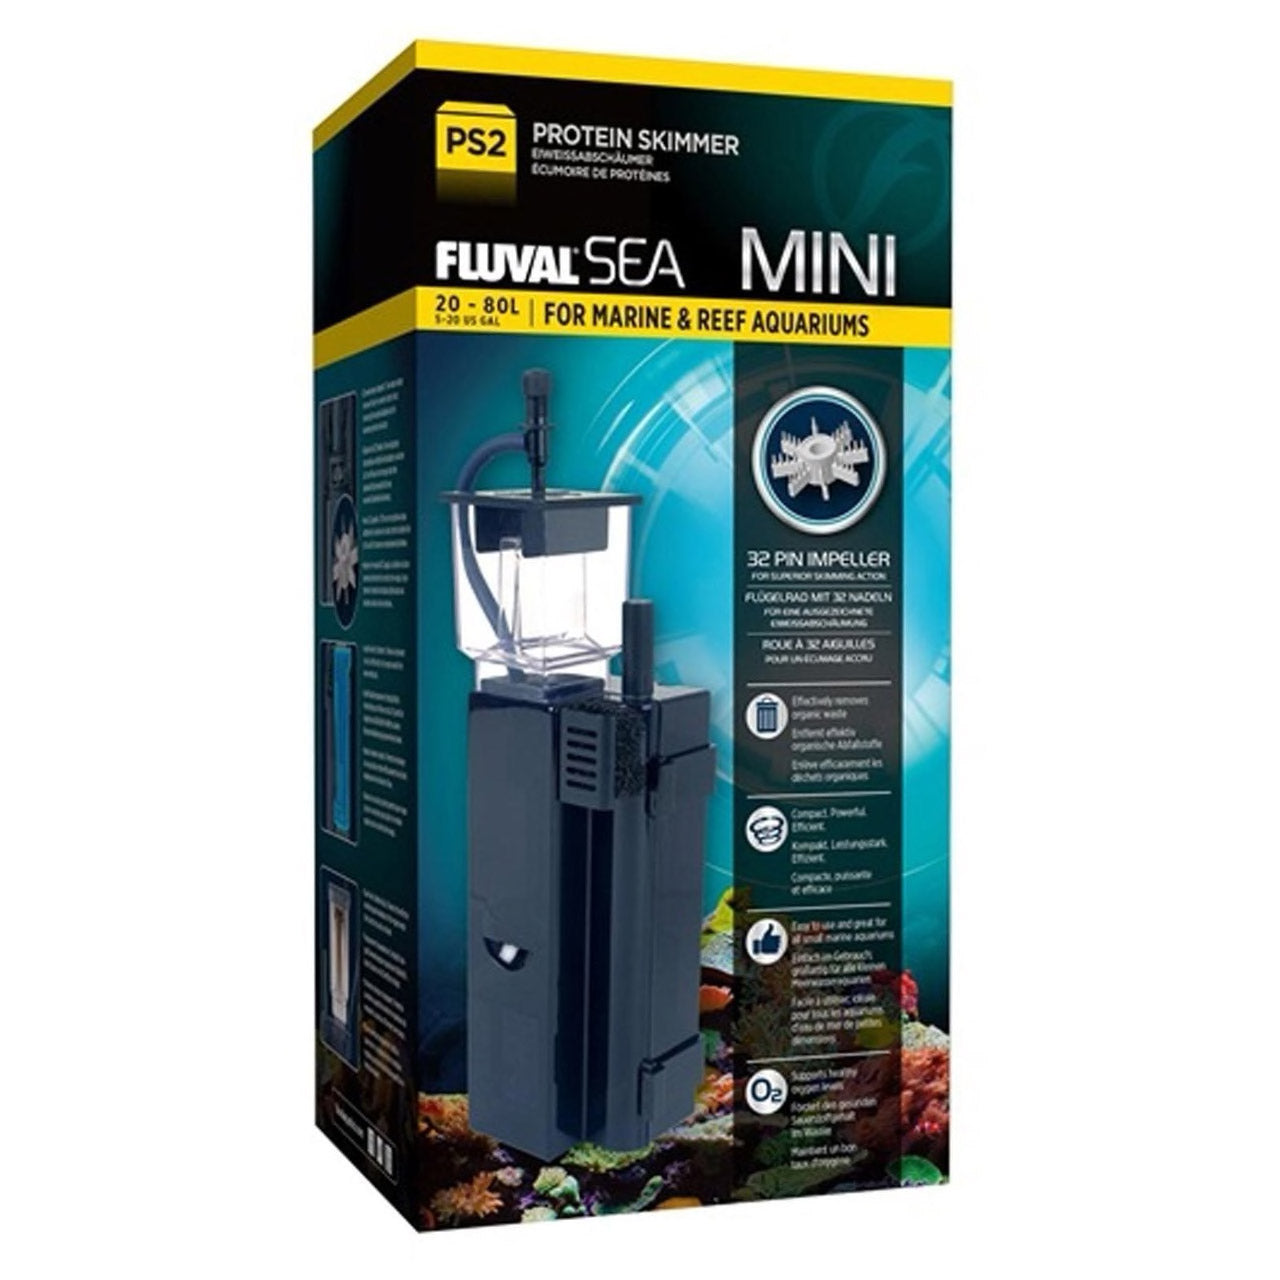 Fluval SEA PS2 Mini Protein Skimmer